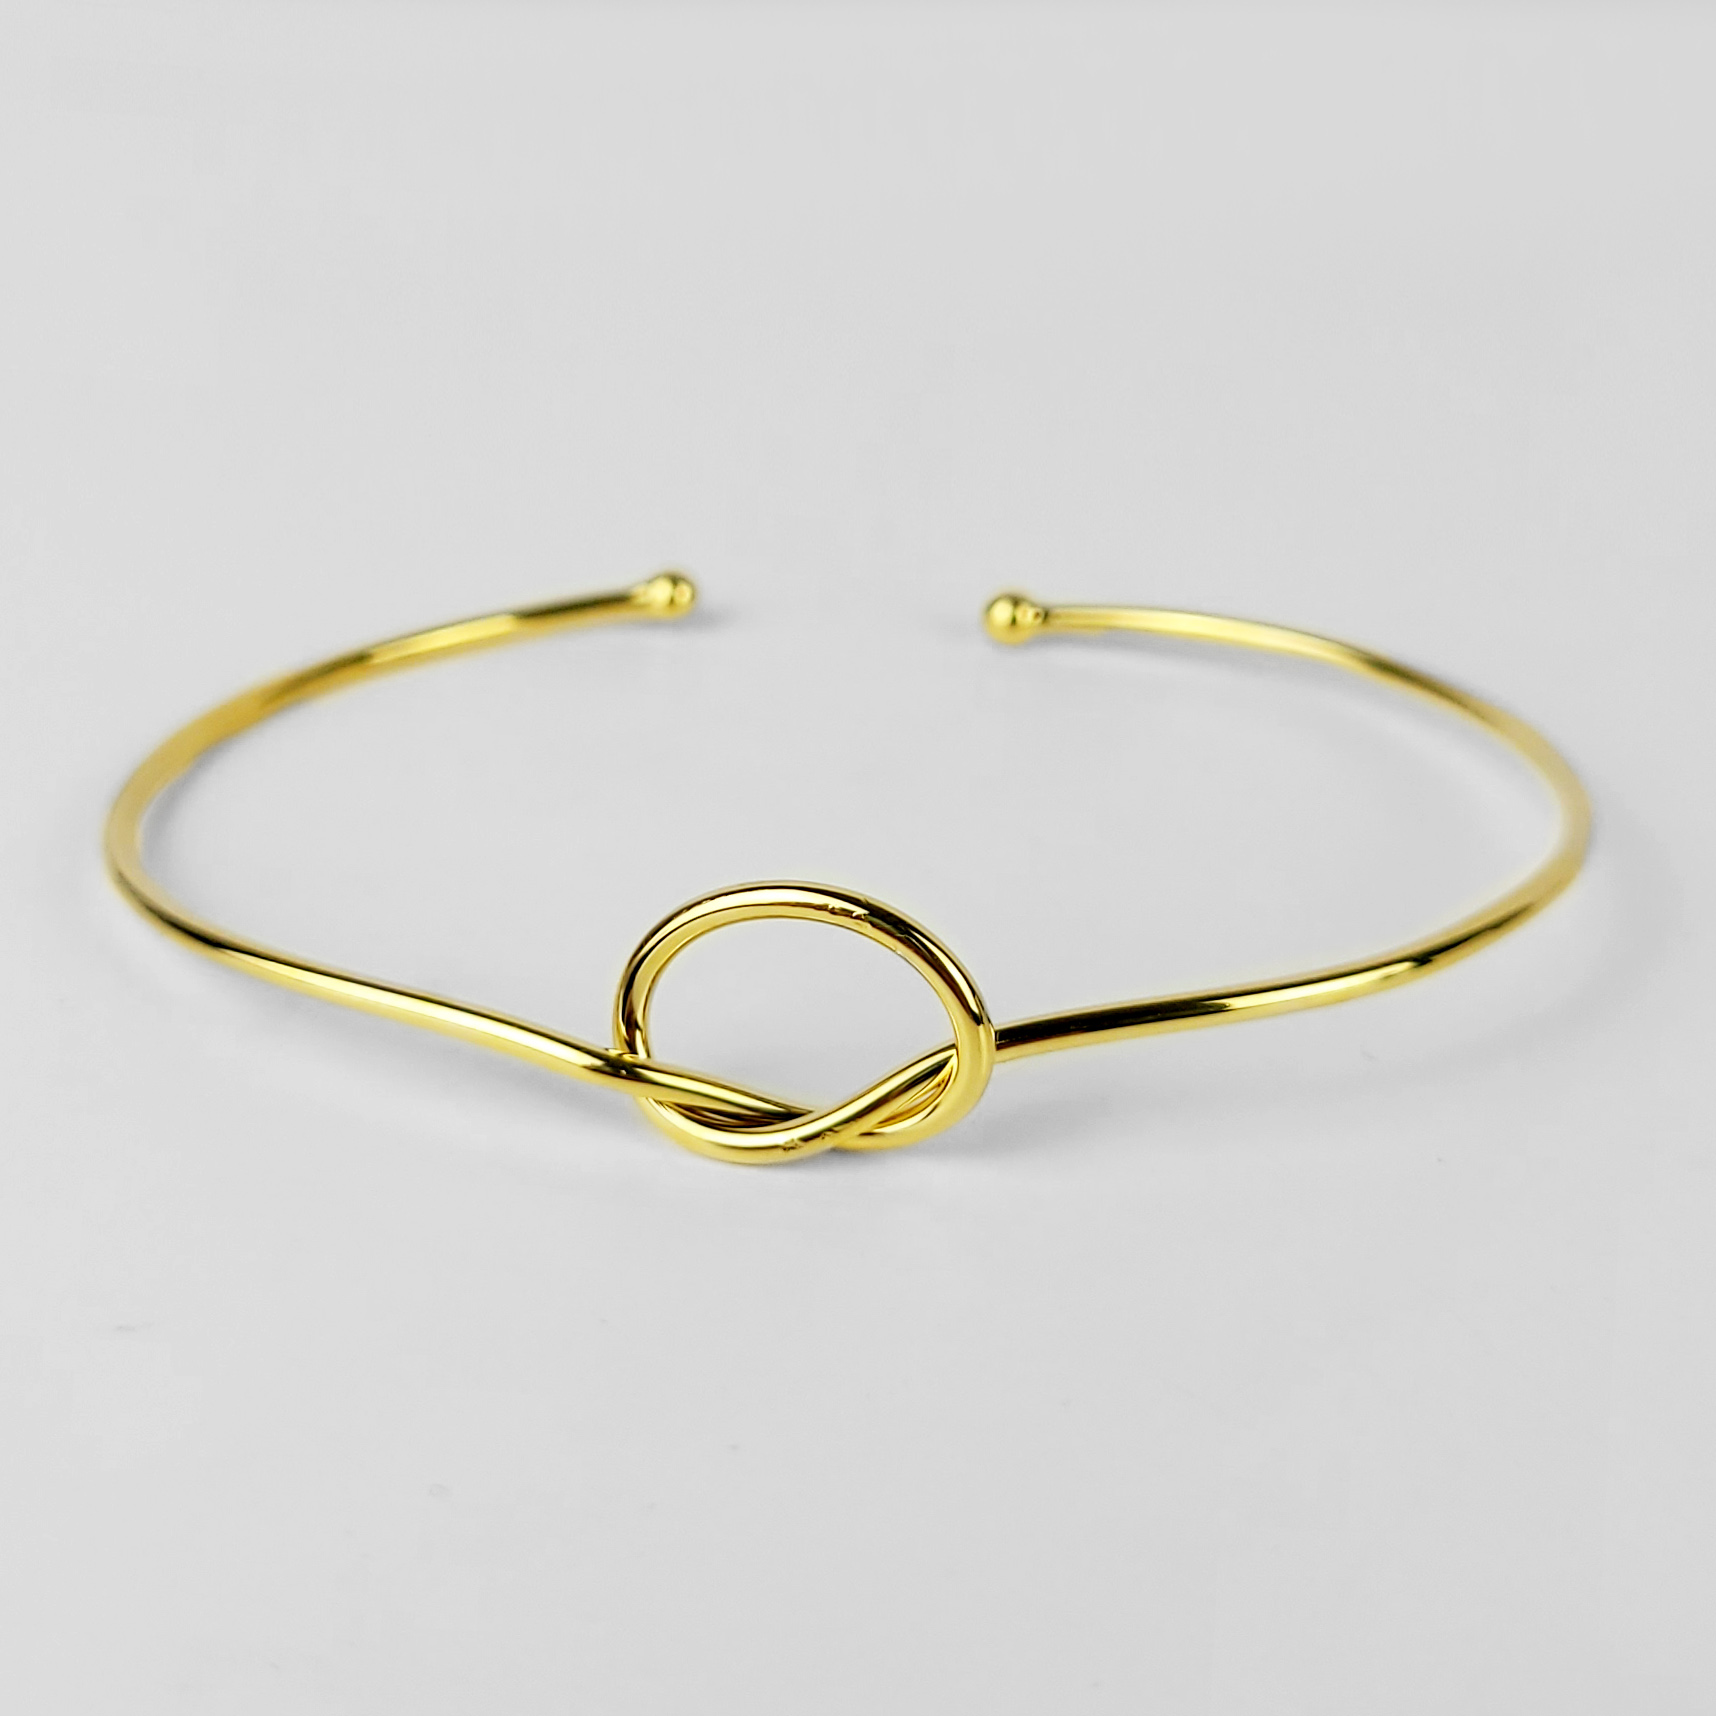 Bracelete Ajustável Detalhe de Nó Folheado Ouro 18k  - Lunozê Joias